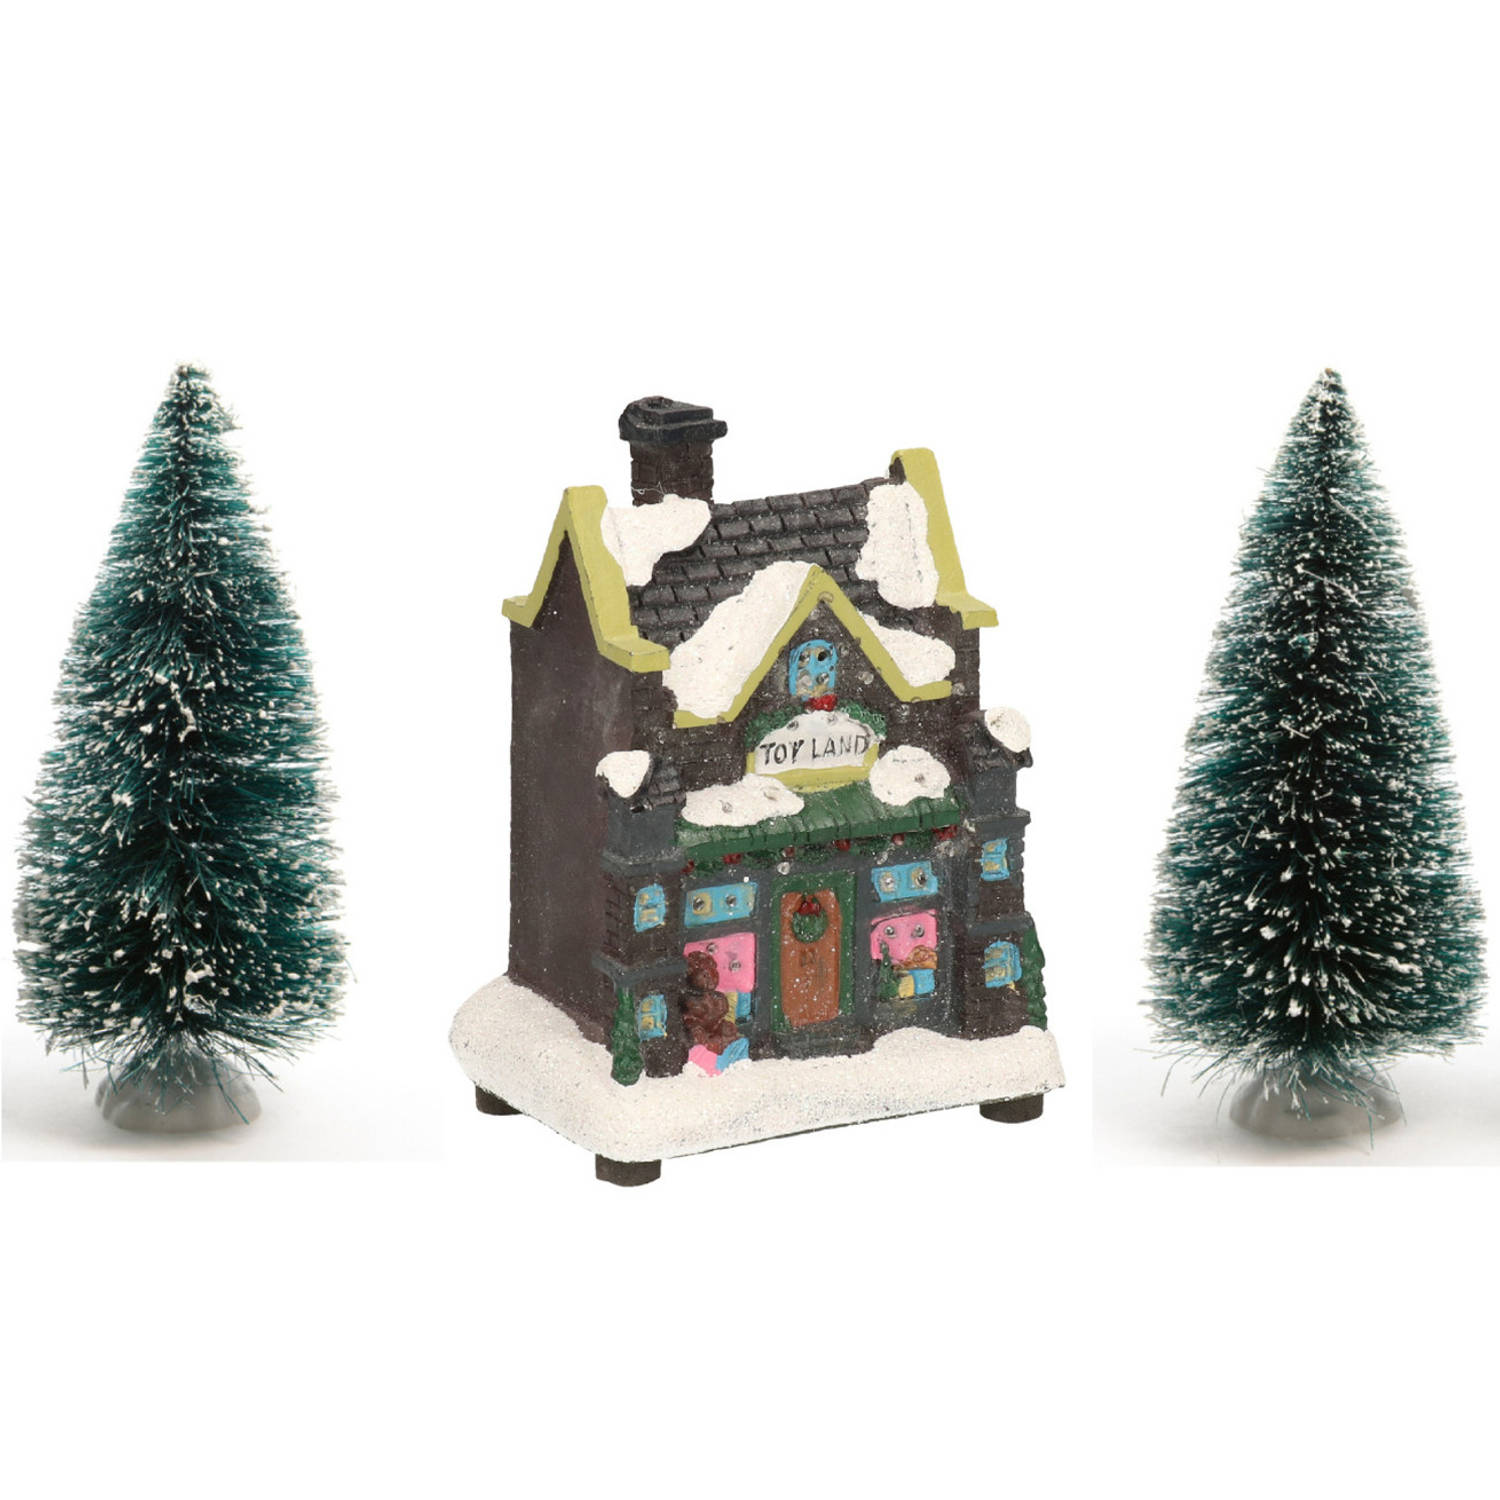 Kerstdorp verlicht kersthuisje speelgoedwinkel 12 cm inclusief 2 kerstboompjes Kerstdorpen